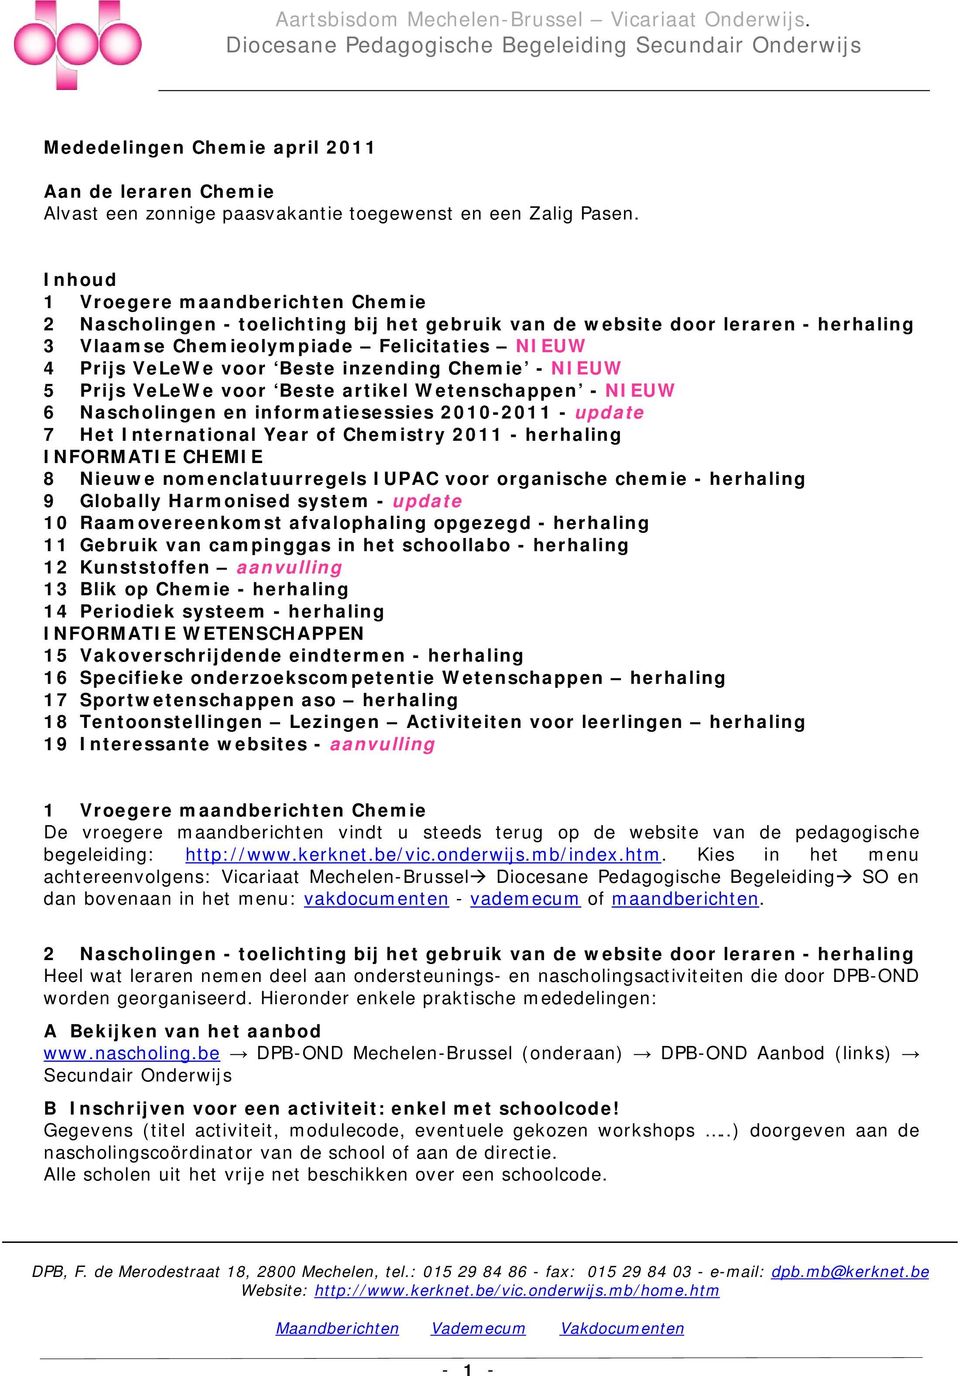 Inhoud 1 Vroegere maandberichten Chemie 2 Nascholingen - toelichting bij het gebruik van de website door leraren - herhaling 3 Vlaamse Chemieolympiade Felicitaties NIEUW 4 Prijs VeLeWe voor Beste